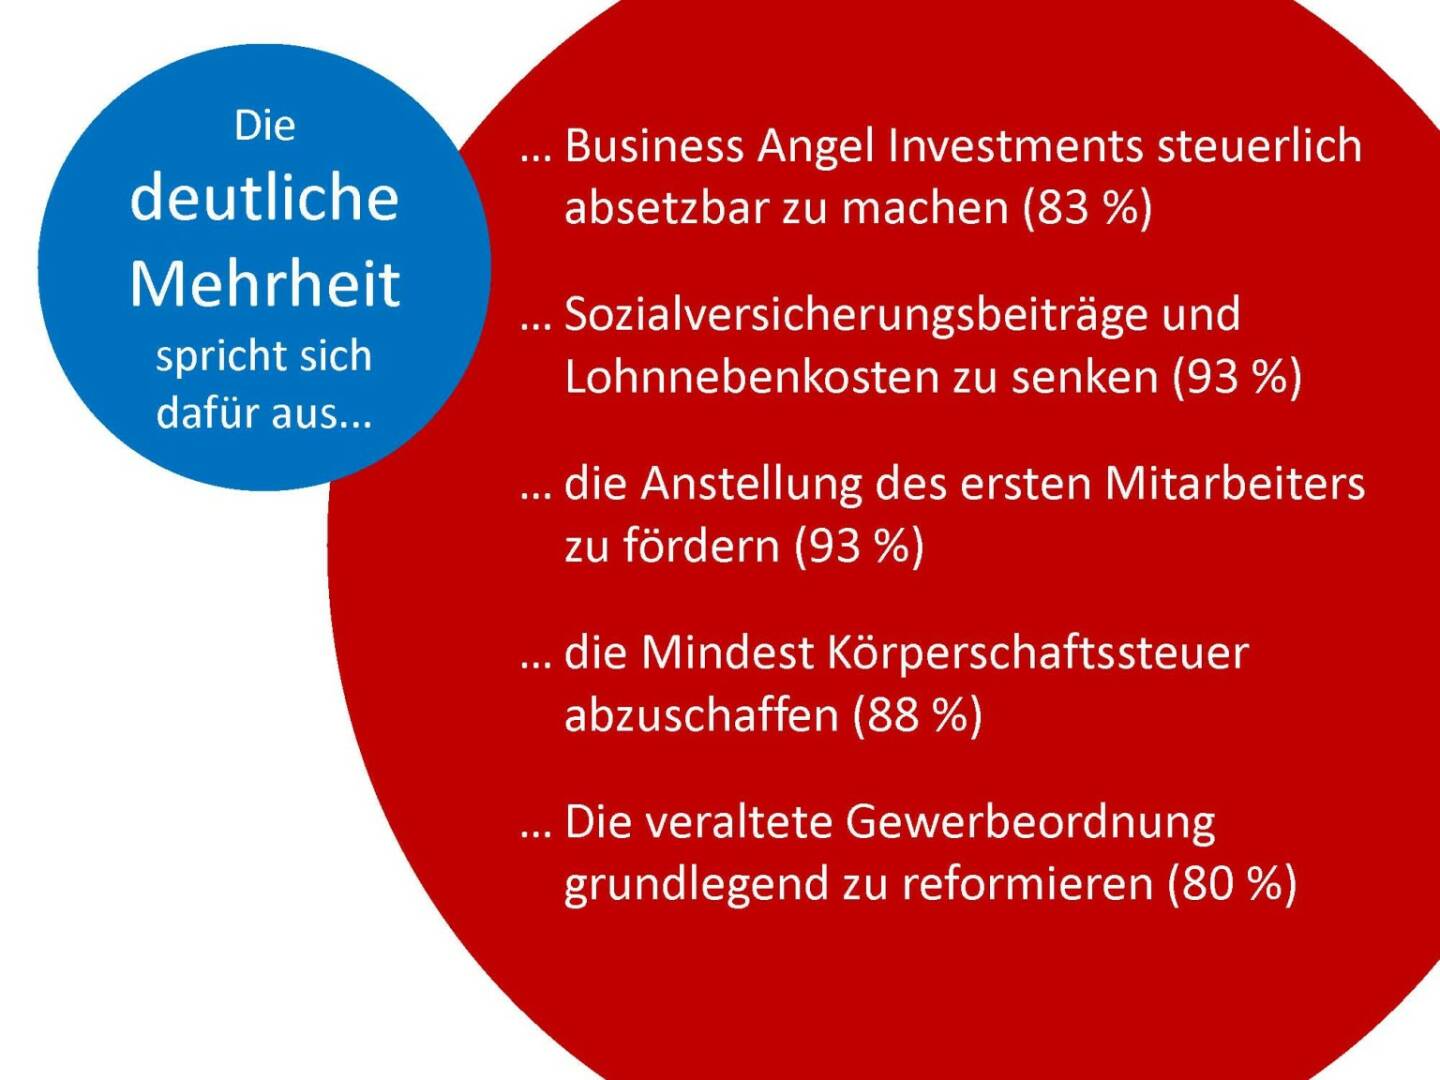 Austrian Startup Report 2013 - Wünsche